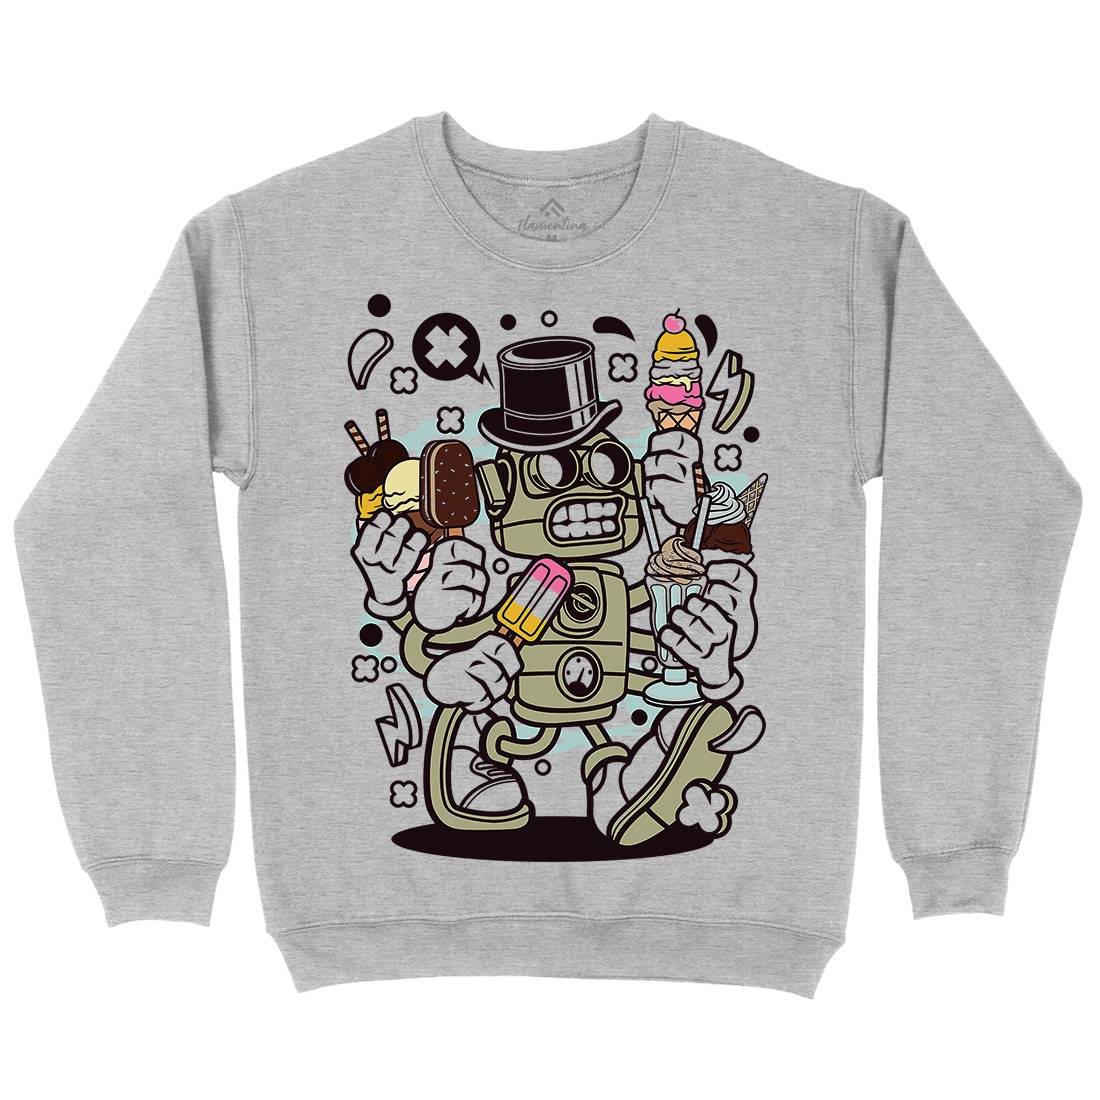 Ice Cream Robot Kids Crew Neck Sweatshirt Food C147